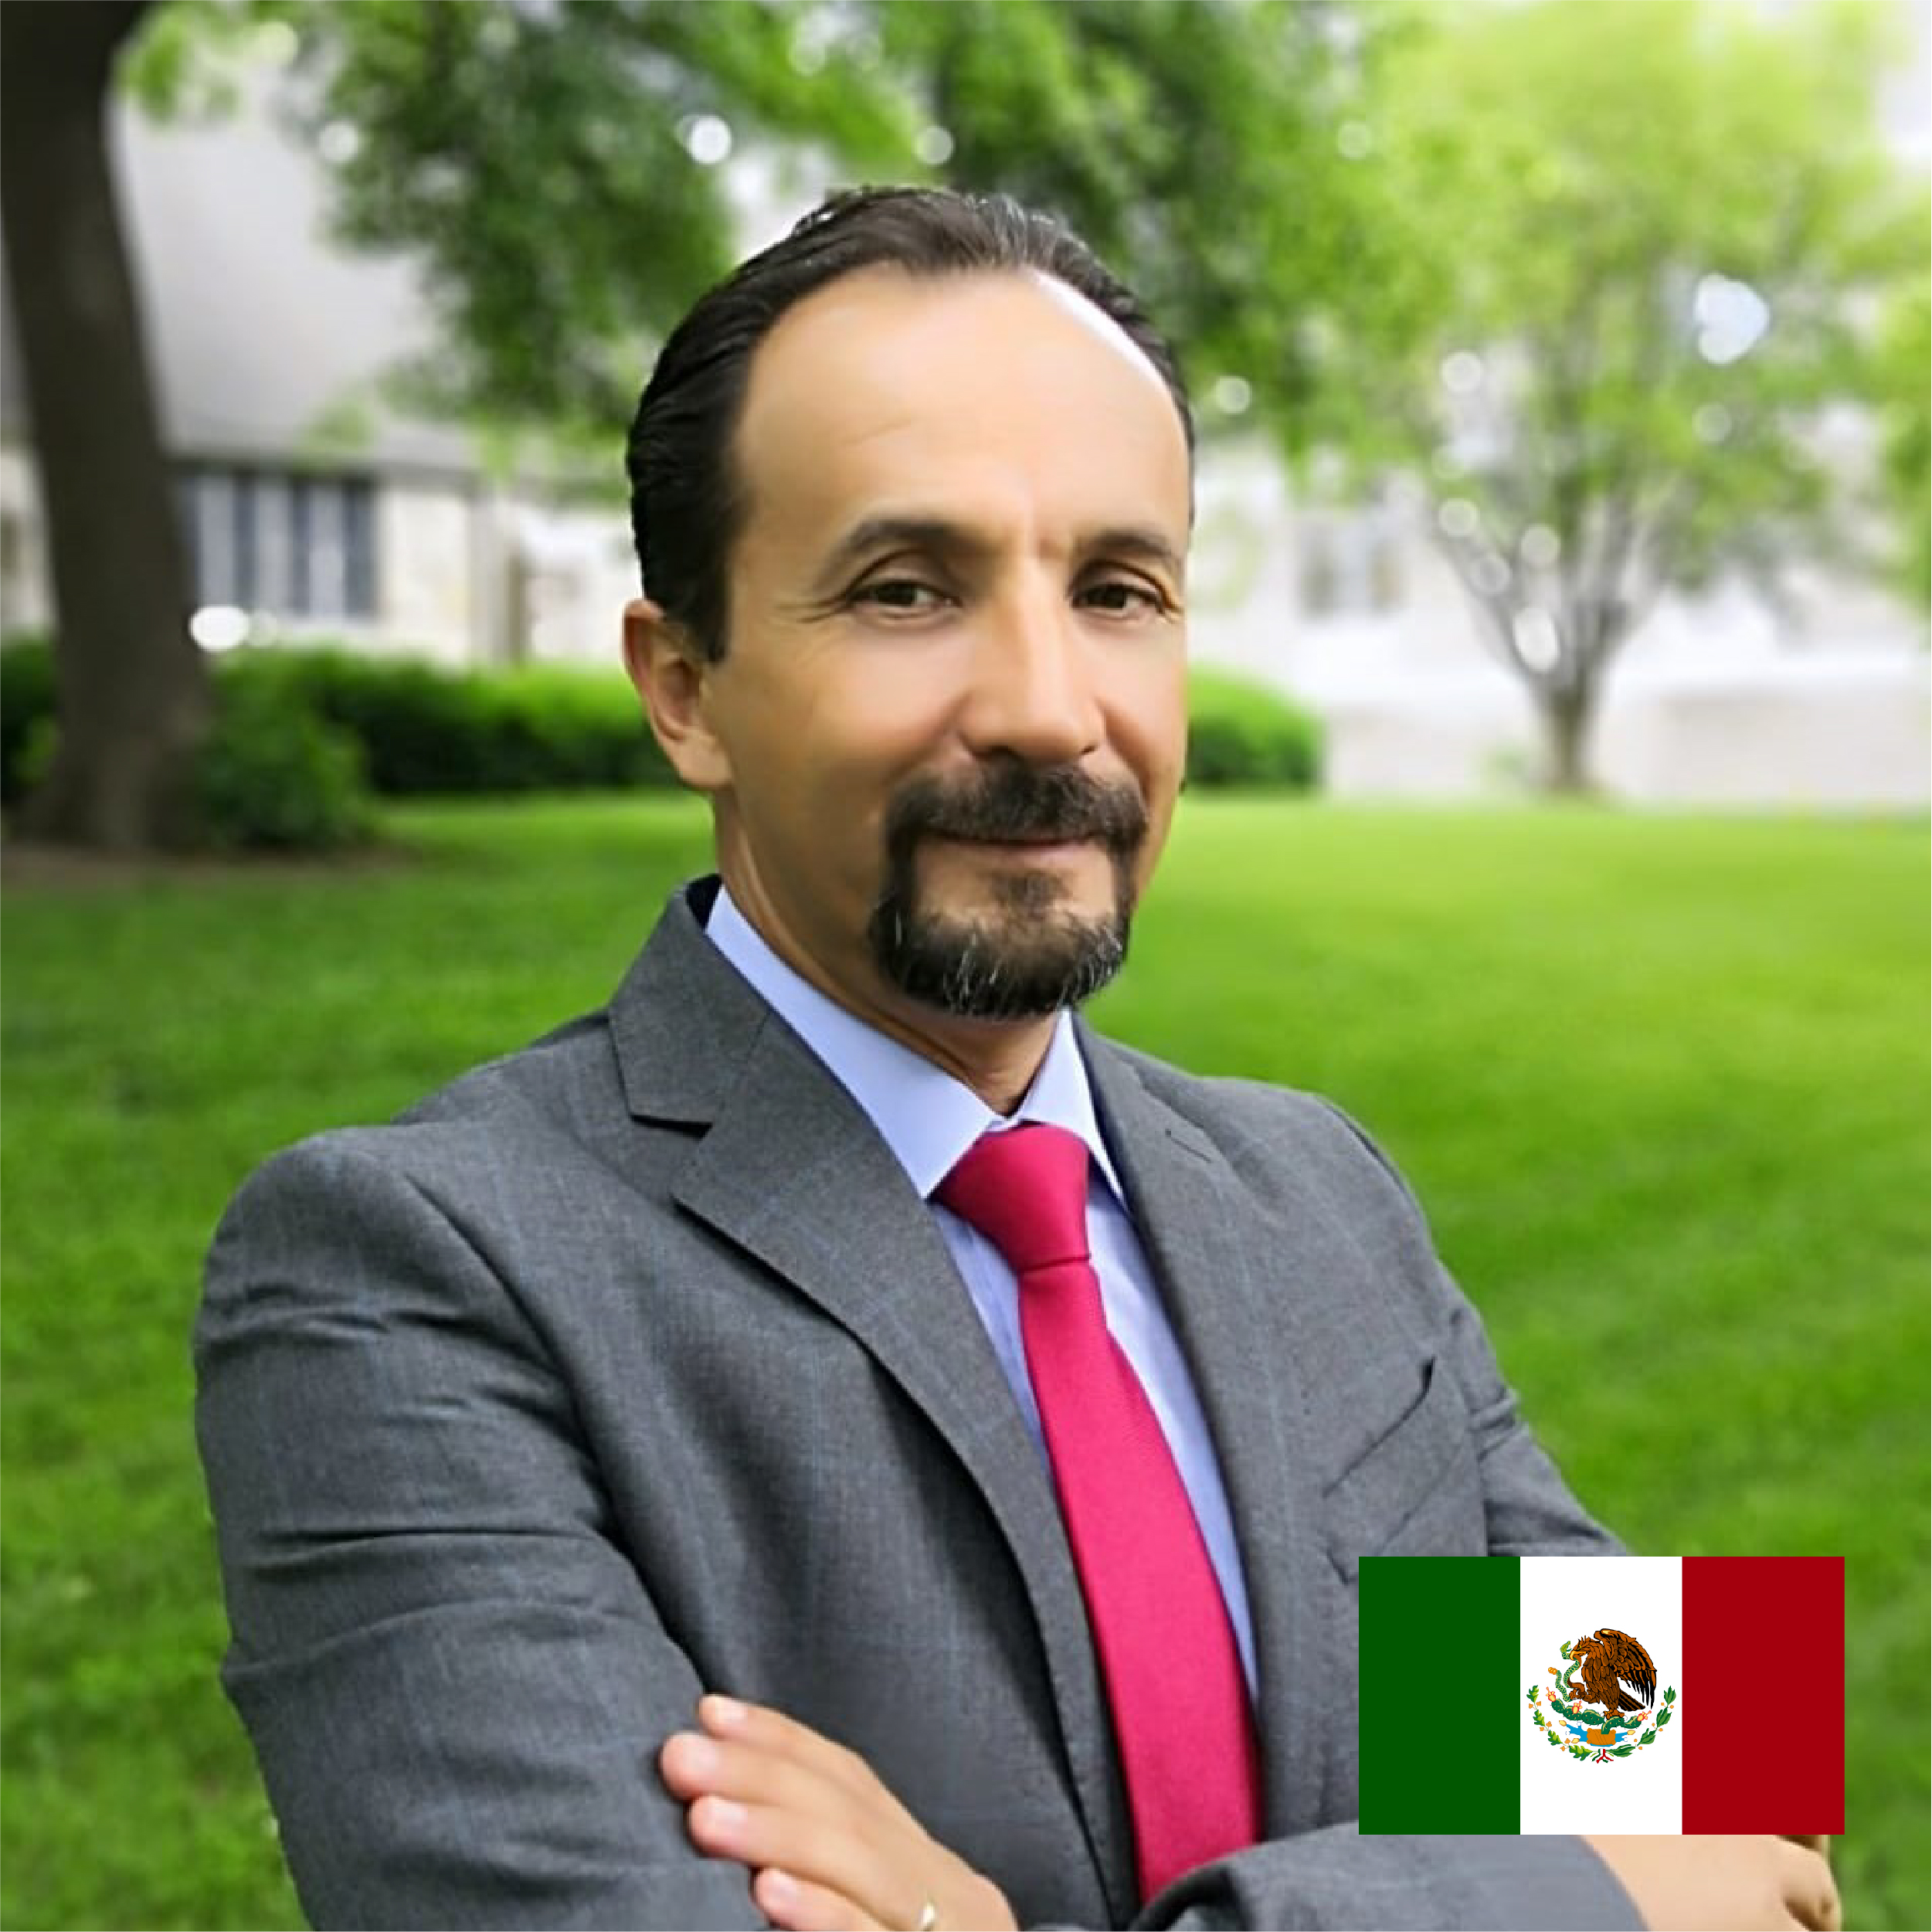 Dr. Luis Enrique de la Peña